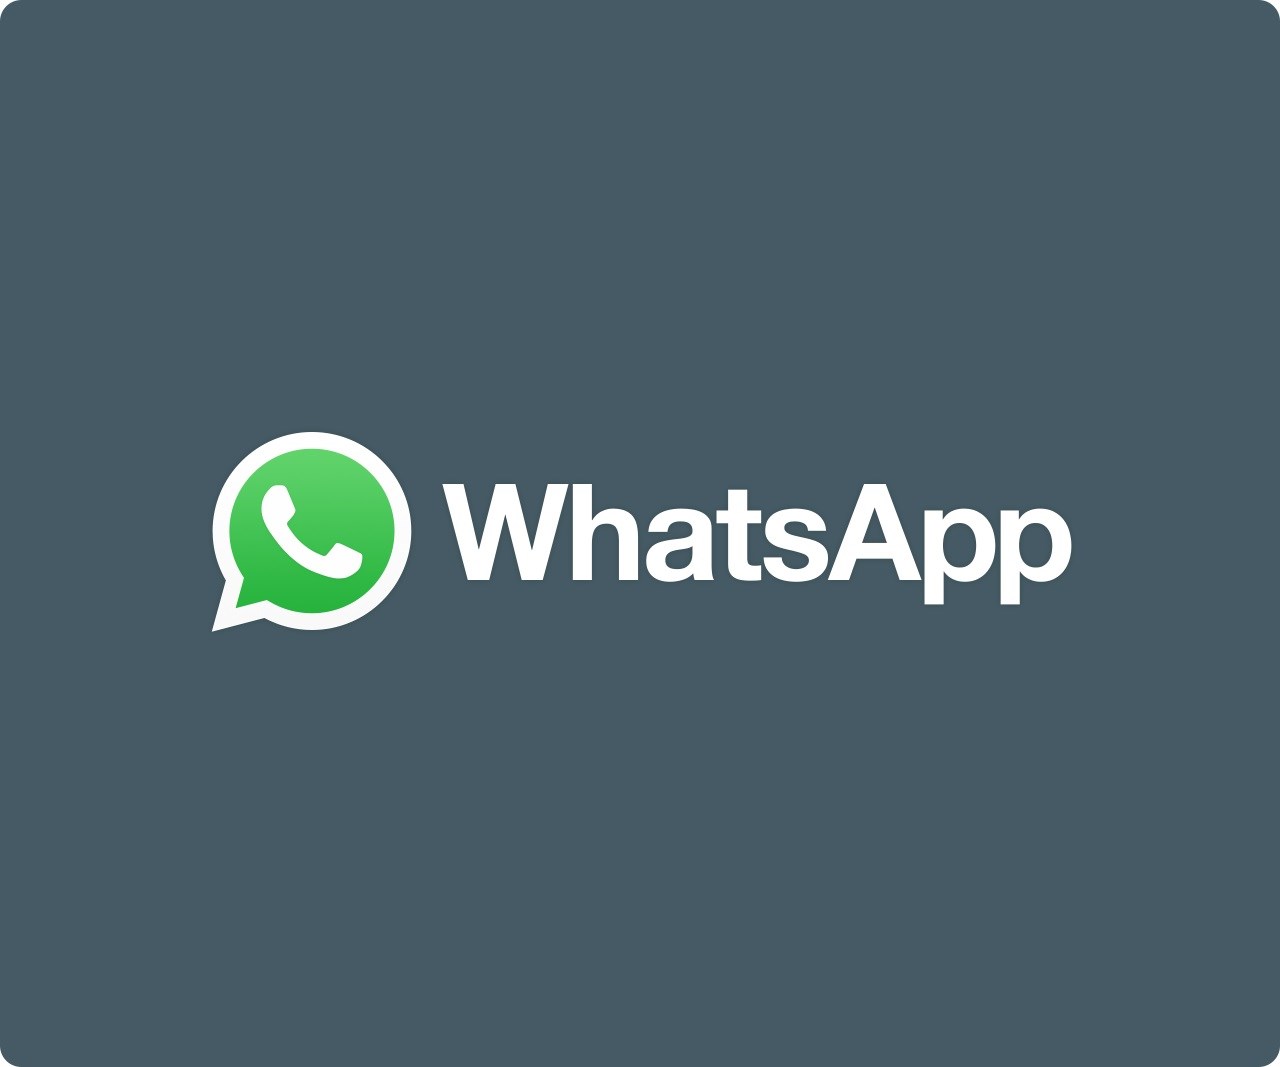 WhatsApp sözleşmesi ülkemizde geçerli değil